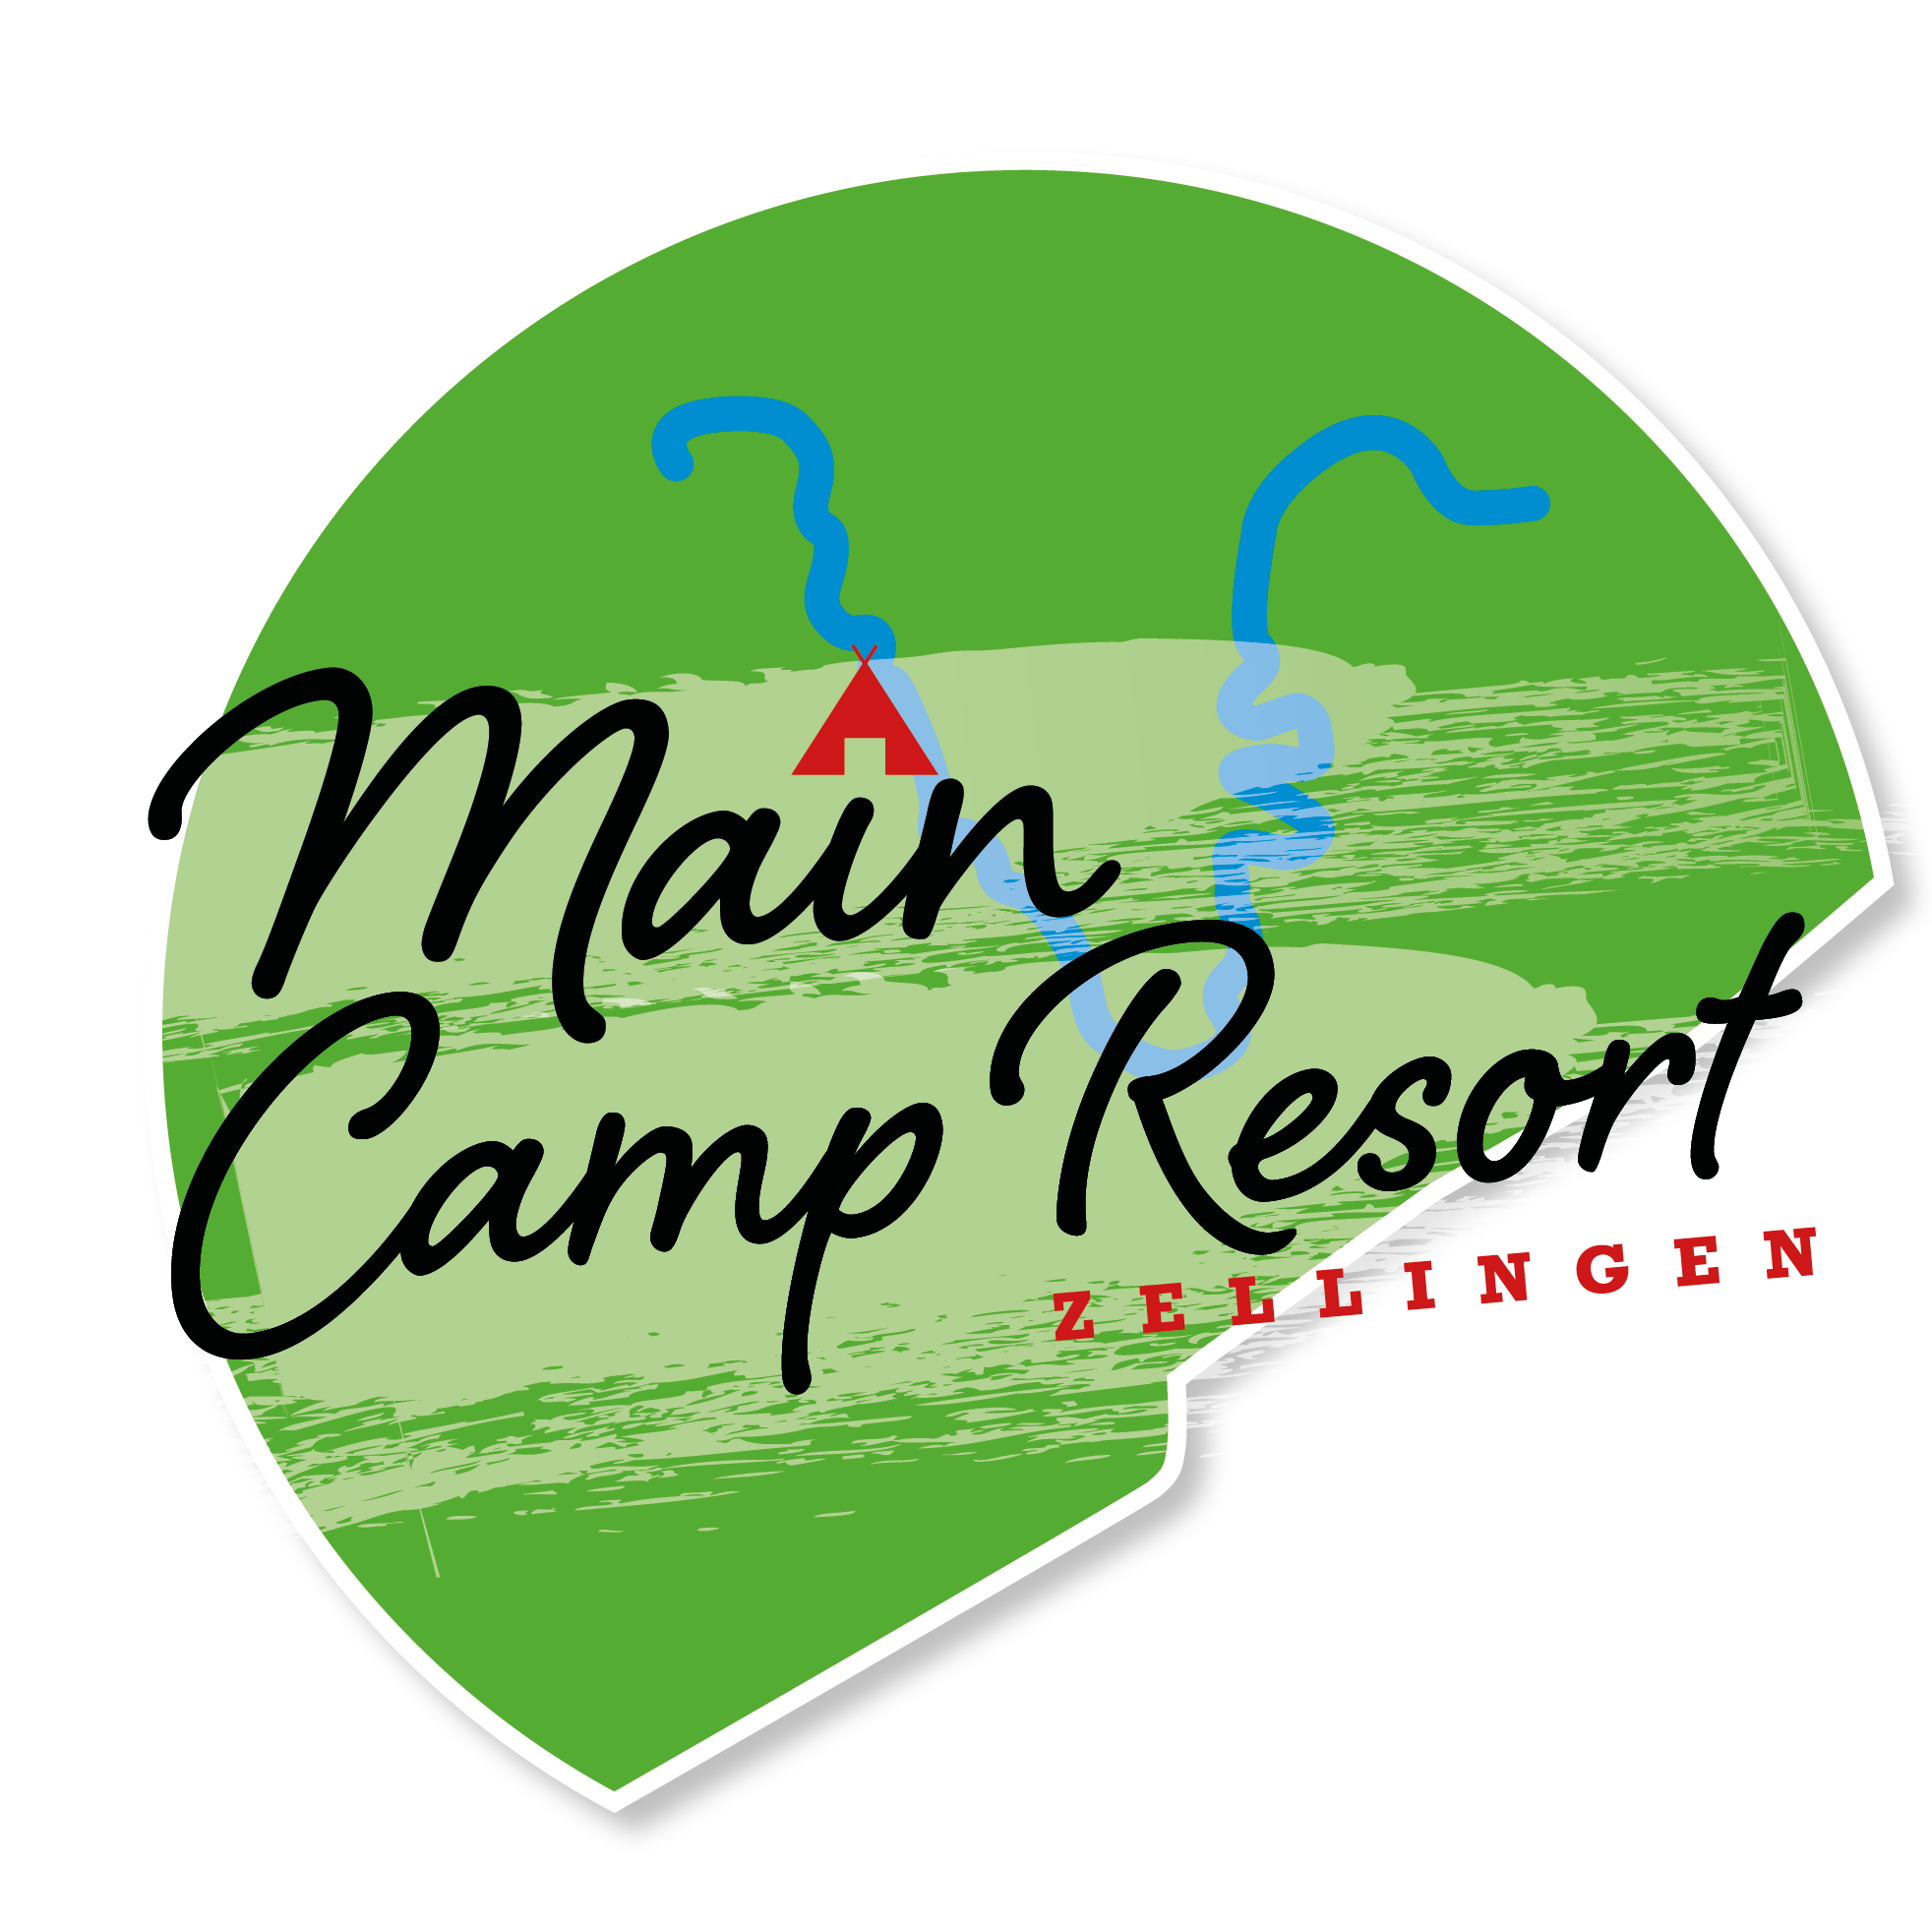 Main Camp Resort – Zellingen